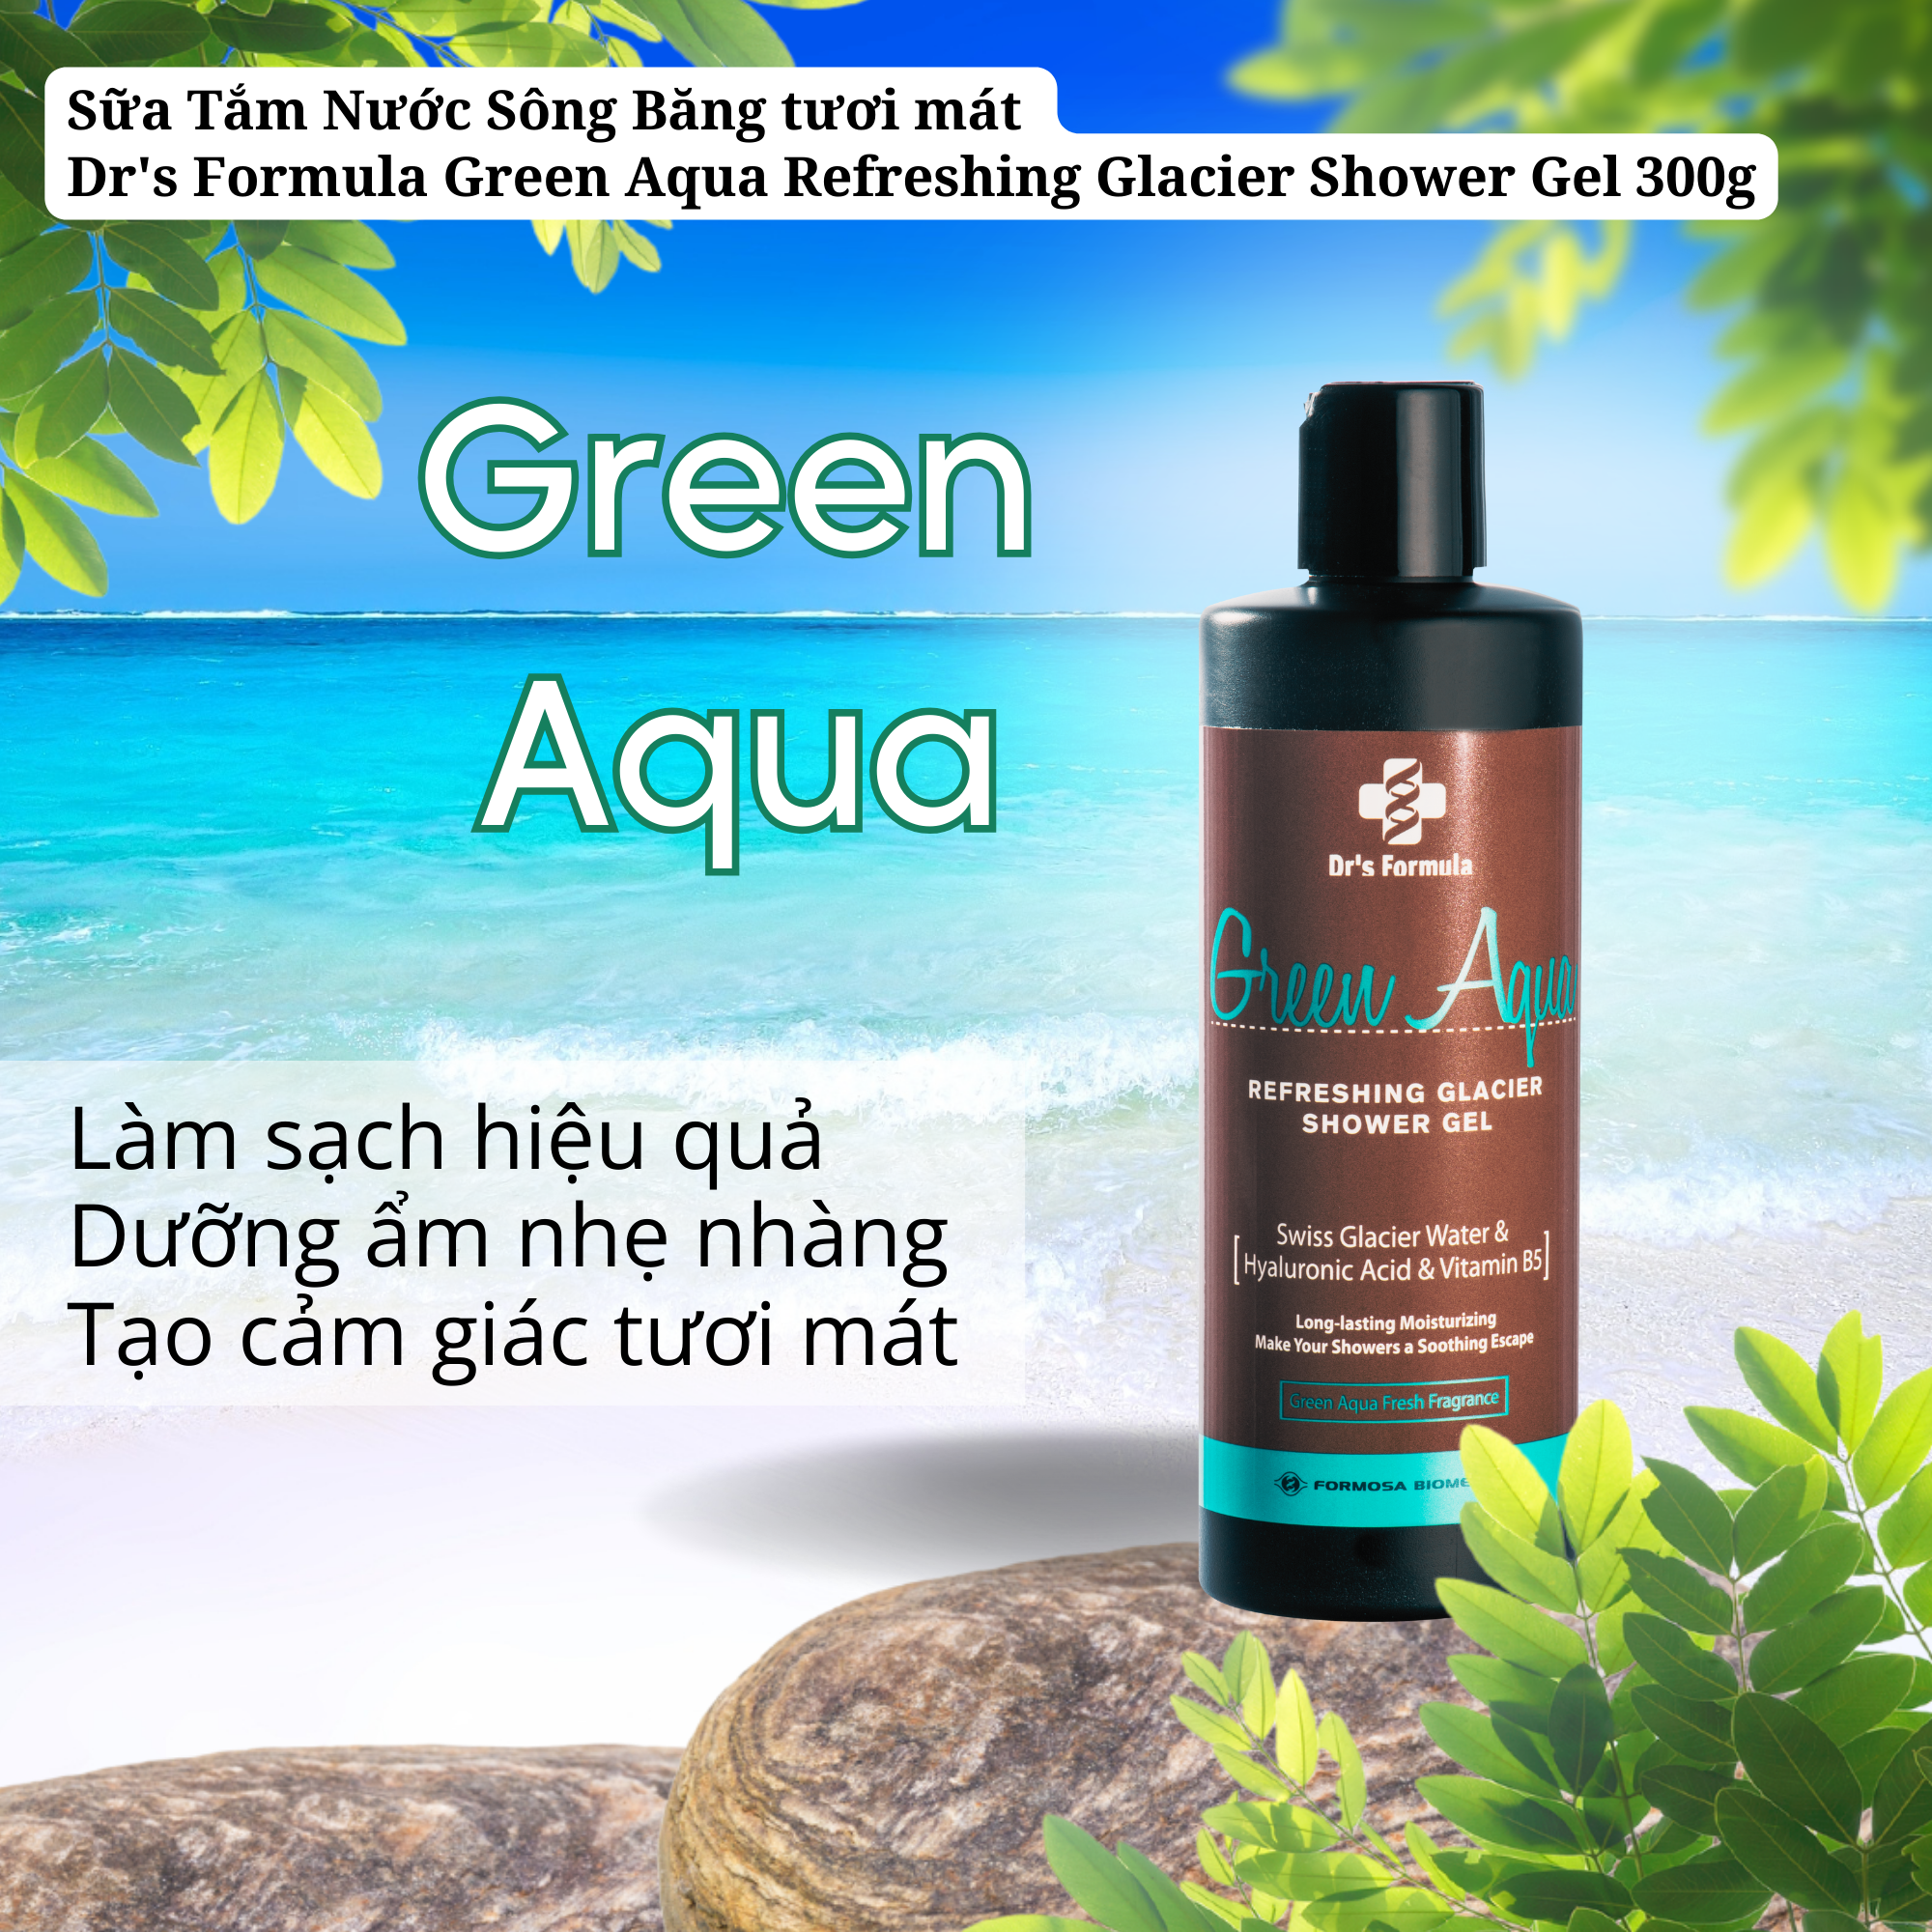 Sữa Tắm Nước Sông Băng Hương Green Aqua Dưỡng Da Tươi Mát Dr's Formula Green Aqua Refreshing Glacier Shower Gel